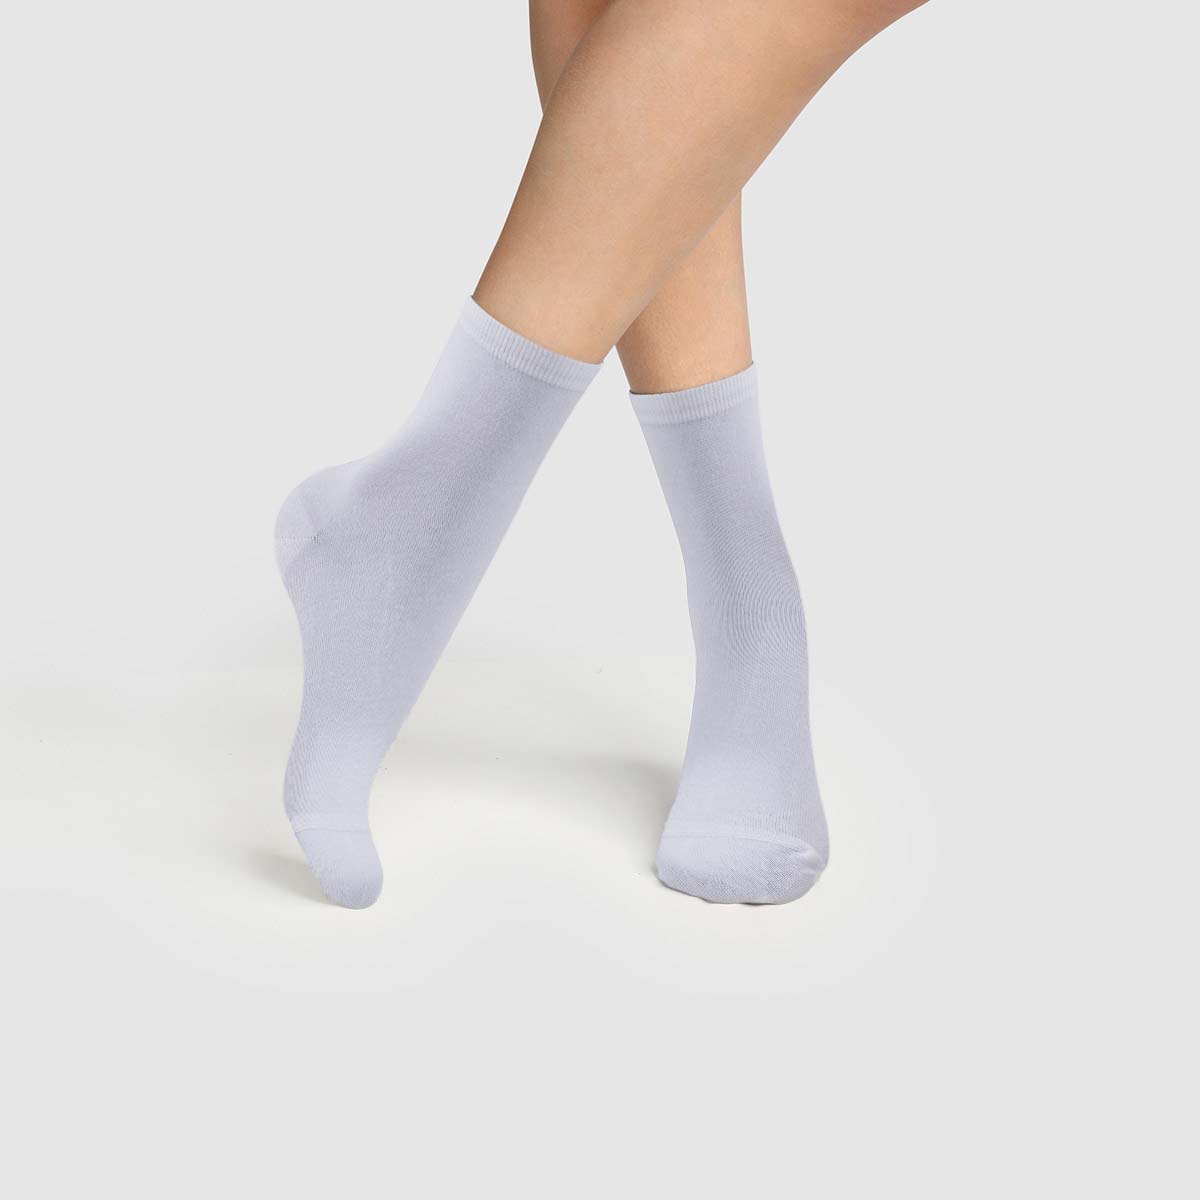 Kami Ladies Socks, Soft Bamboo Socks Anti Bacterial 6 Pairs